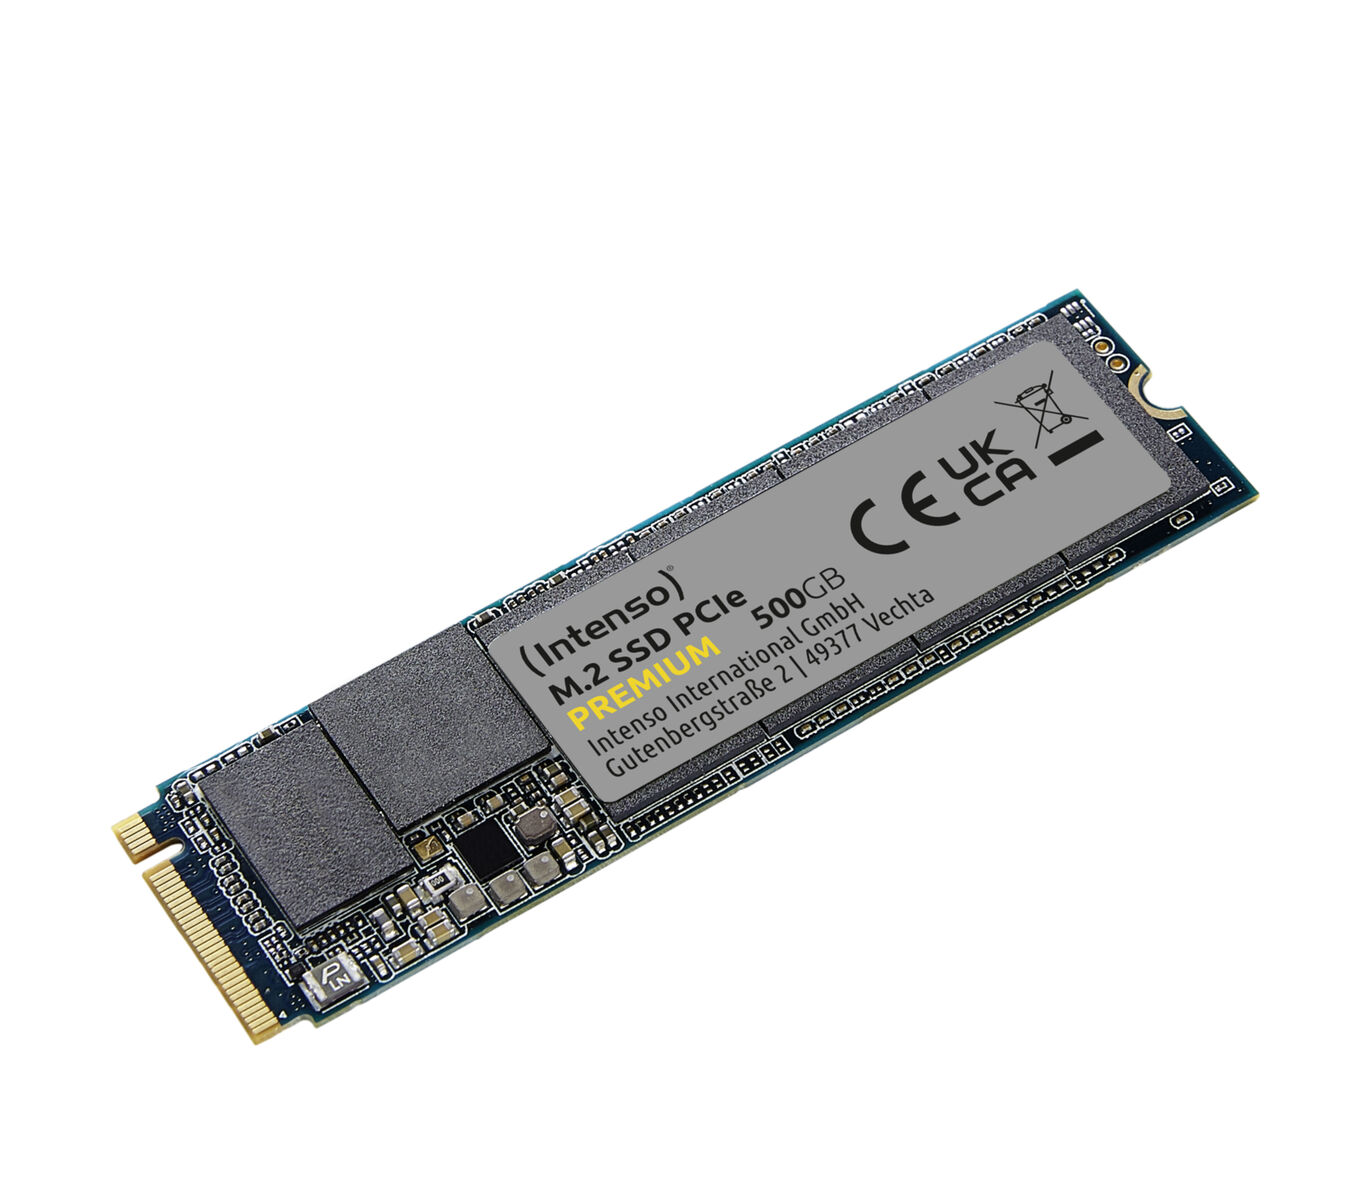 INTENSO SSD 500GB SSD, 500 M.2 Premium intern PCIe, GB